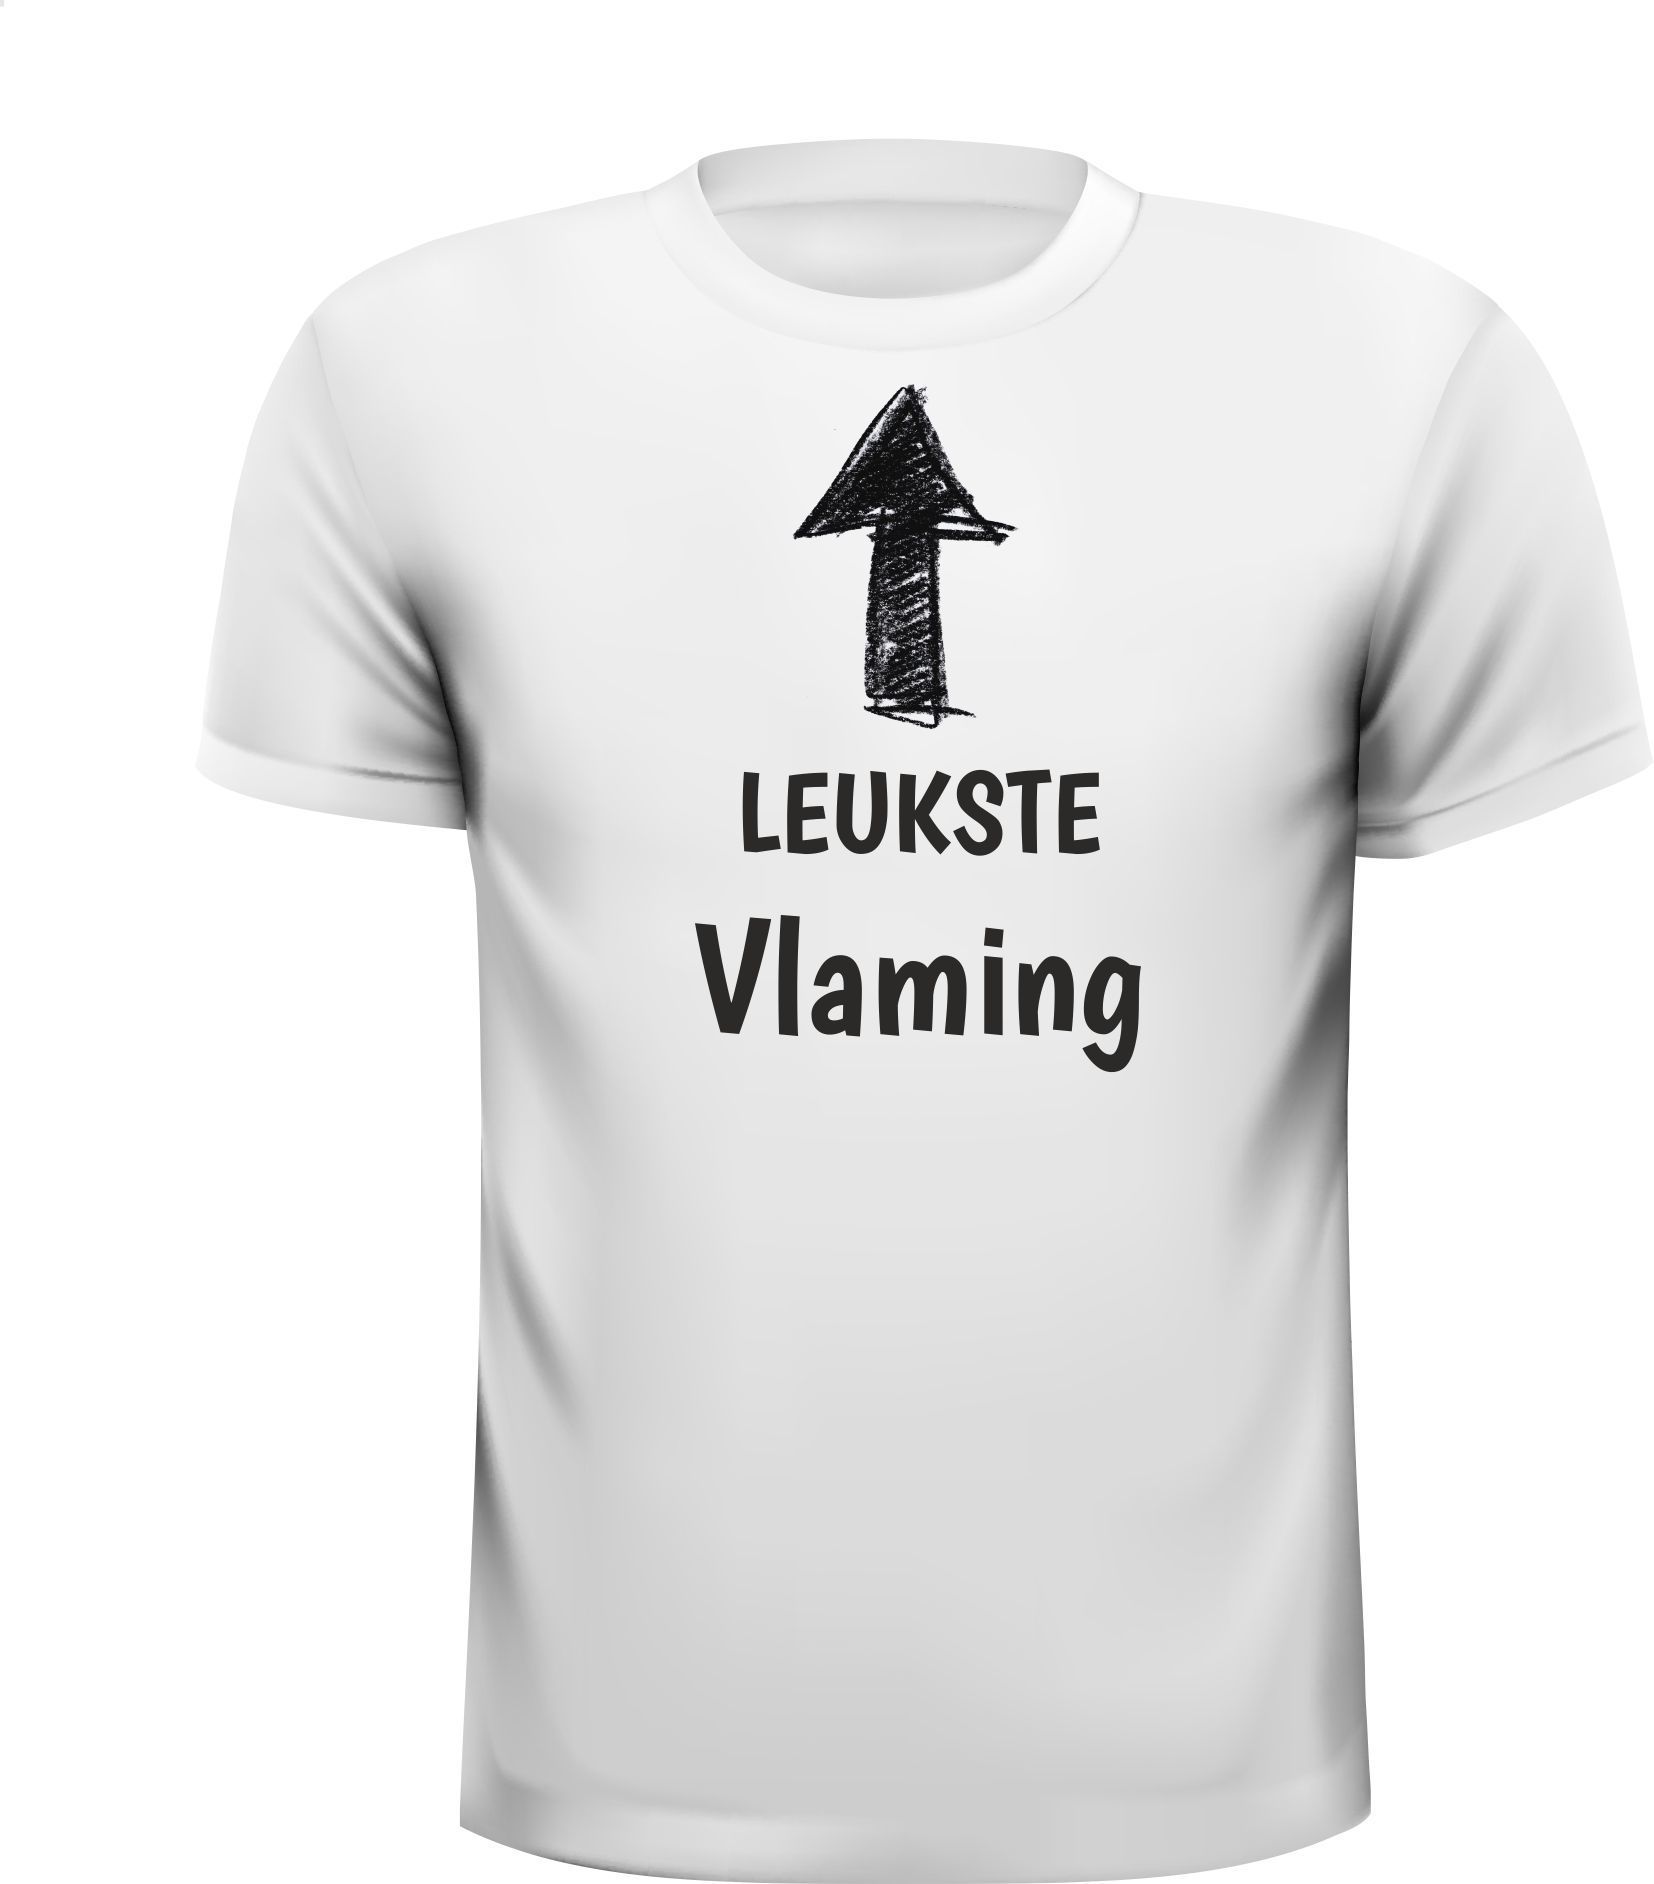 T-shirt voor de  leukste Vlaming van Belgie